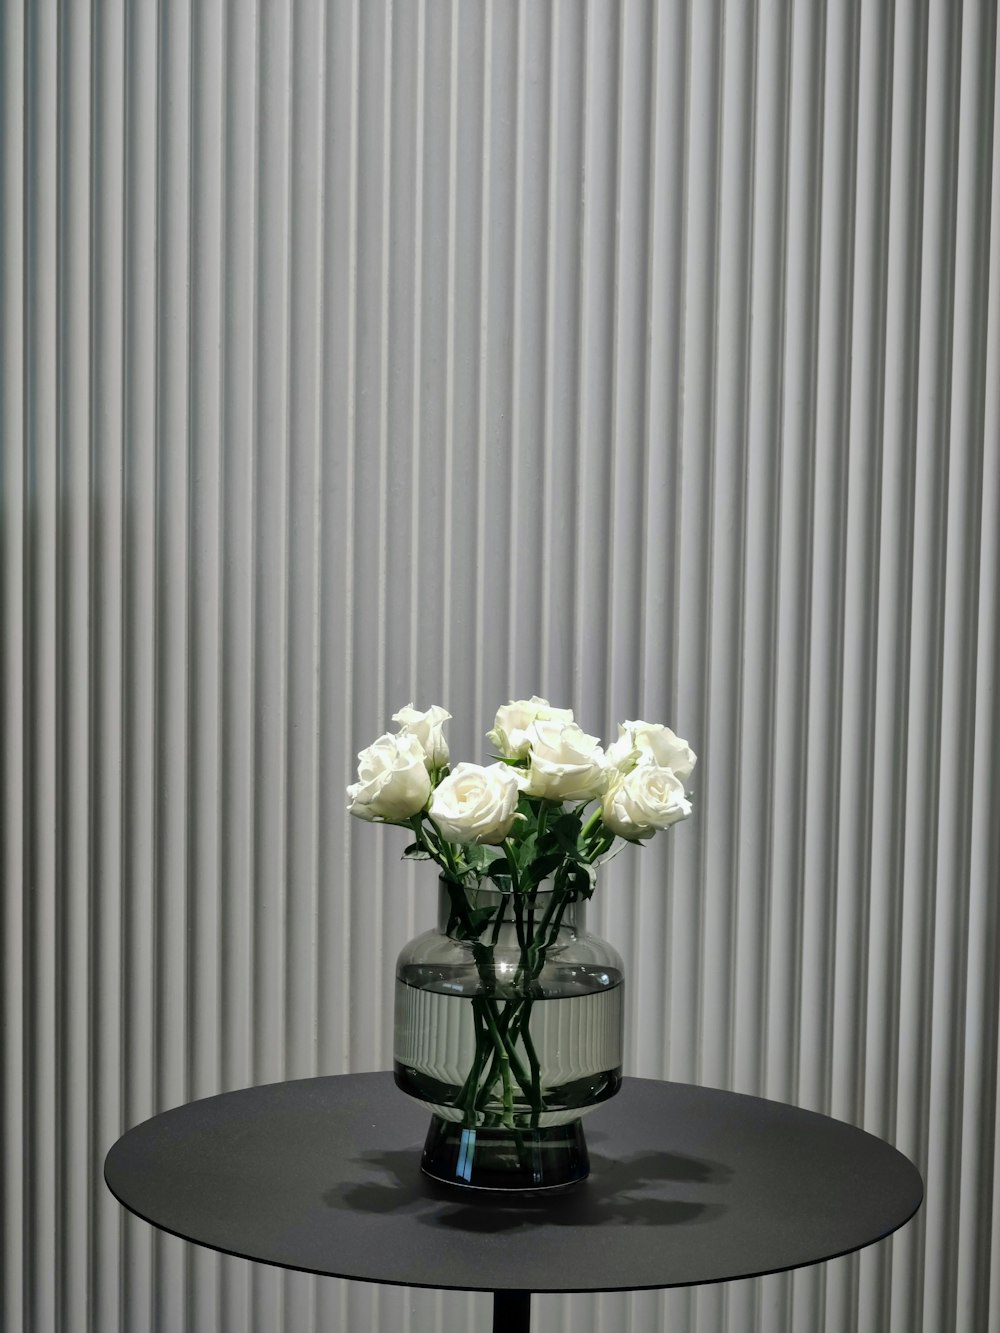 Eine Vase mit weißen Rosen auf einem schwarzen Tisch